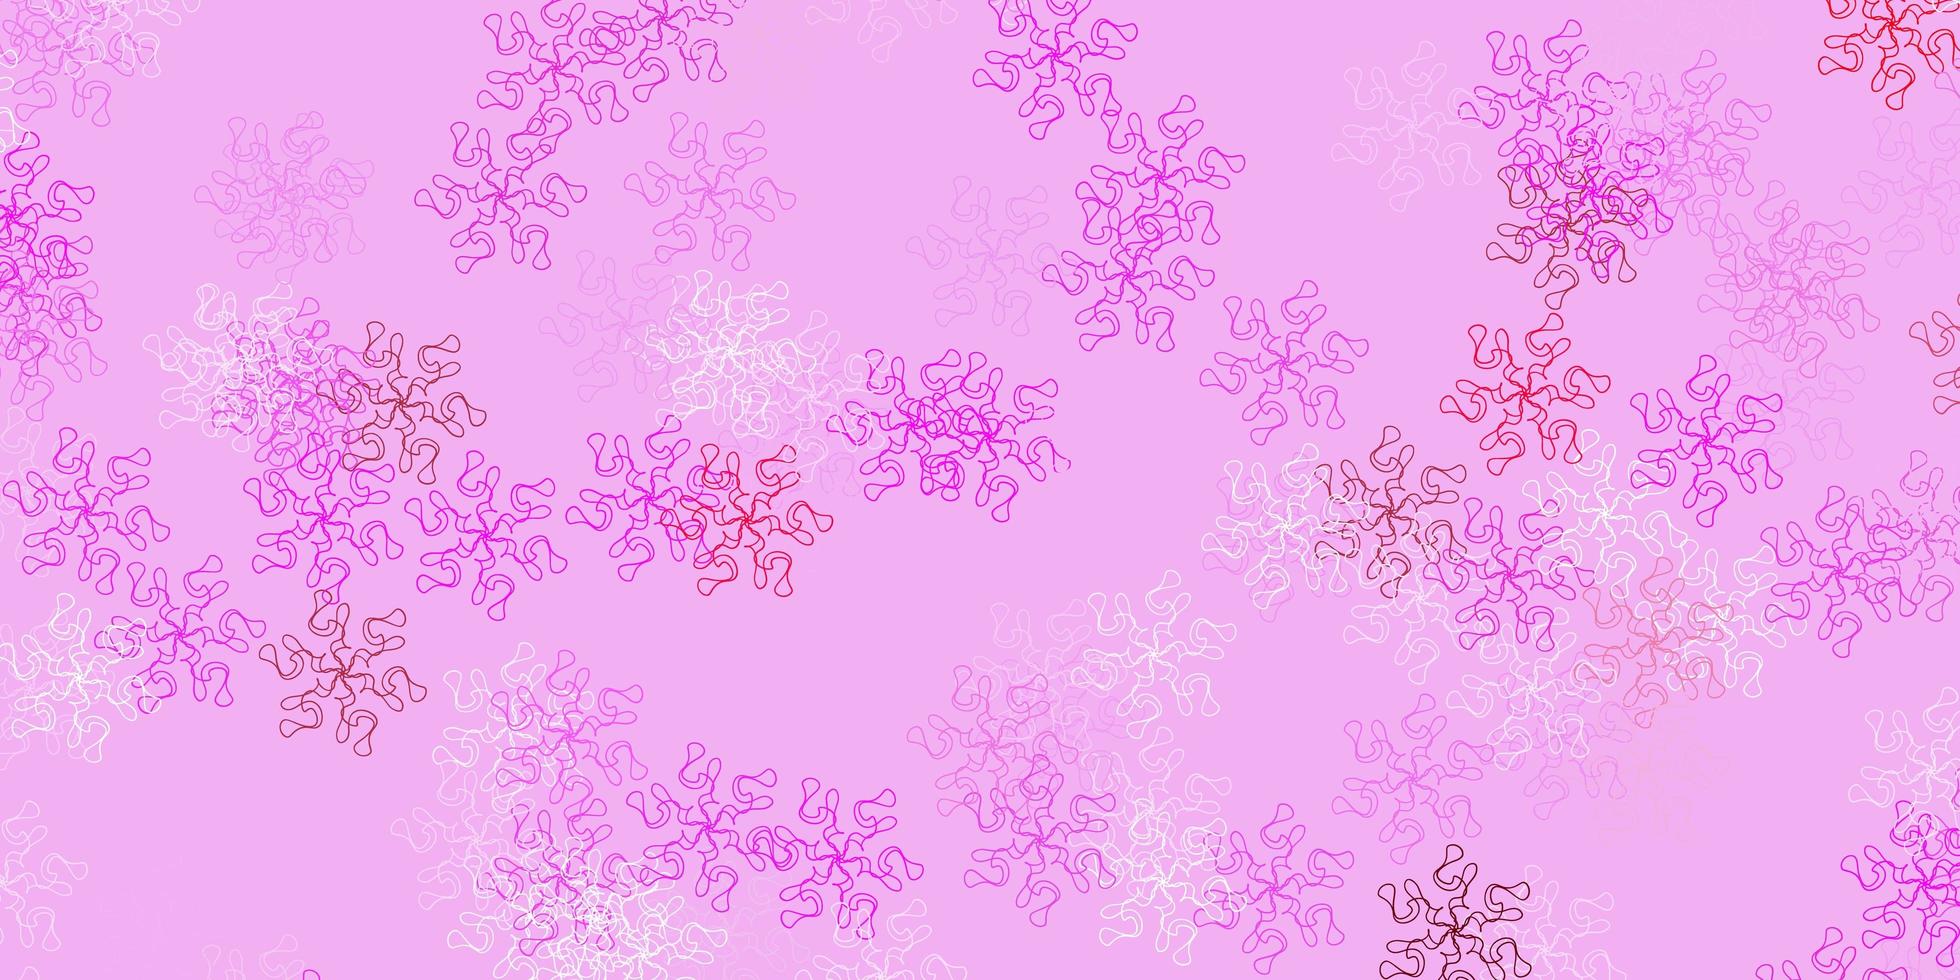 sfondo di doodle di vettore rosa viola chiaro con fiori